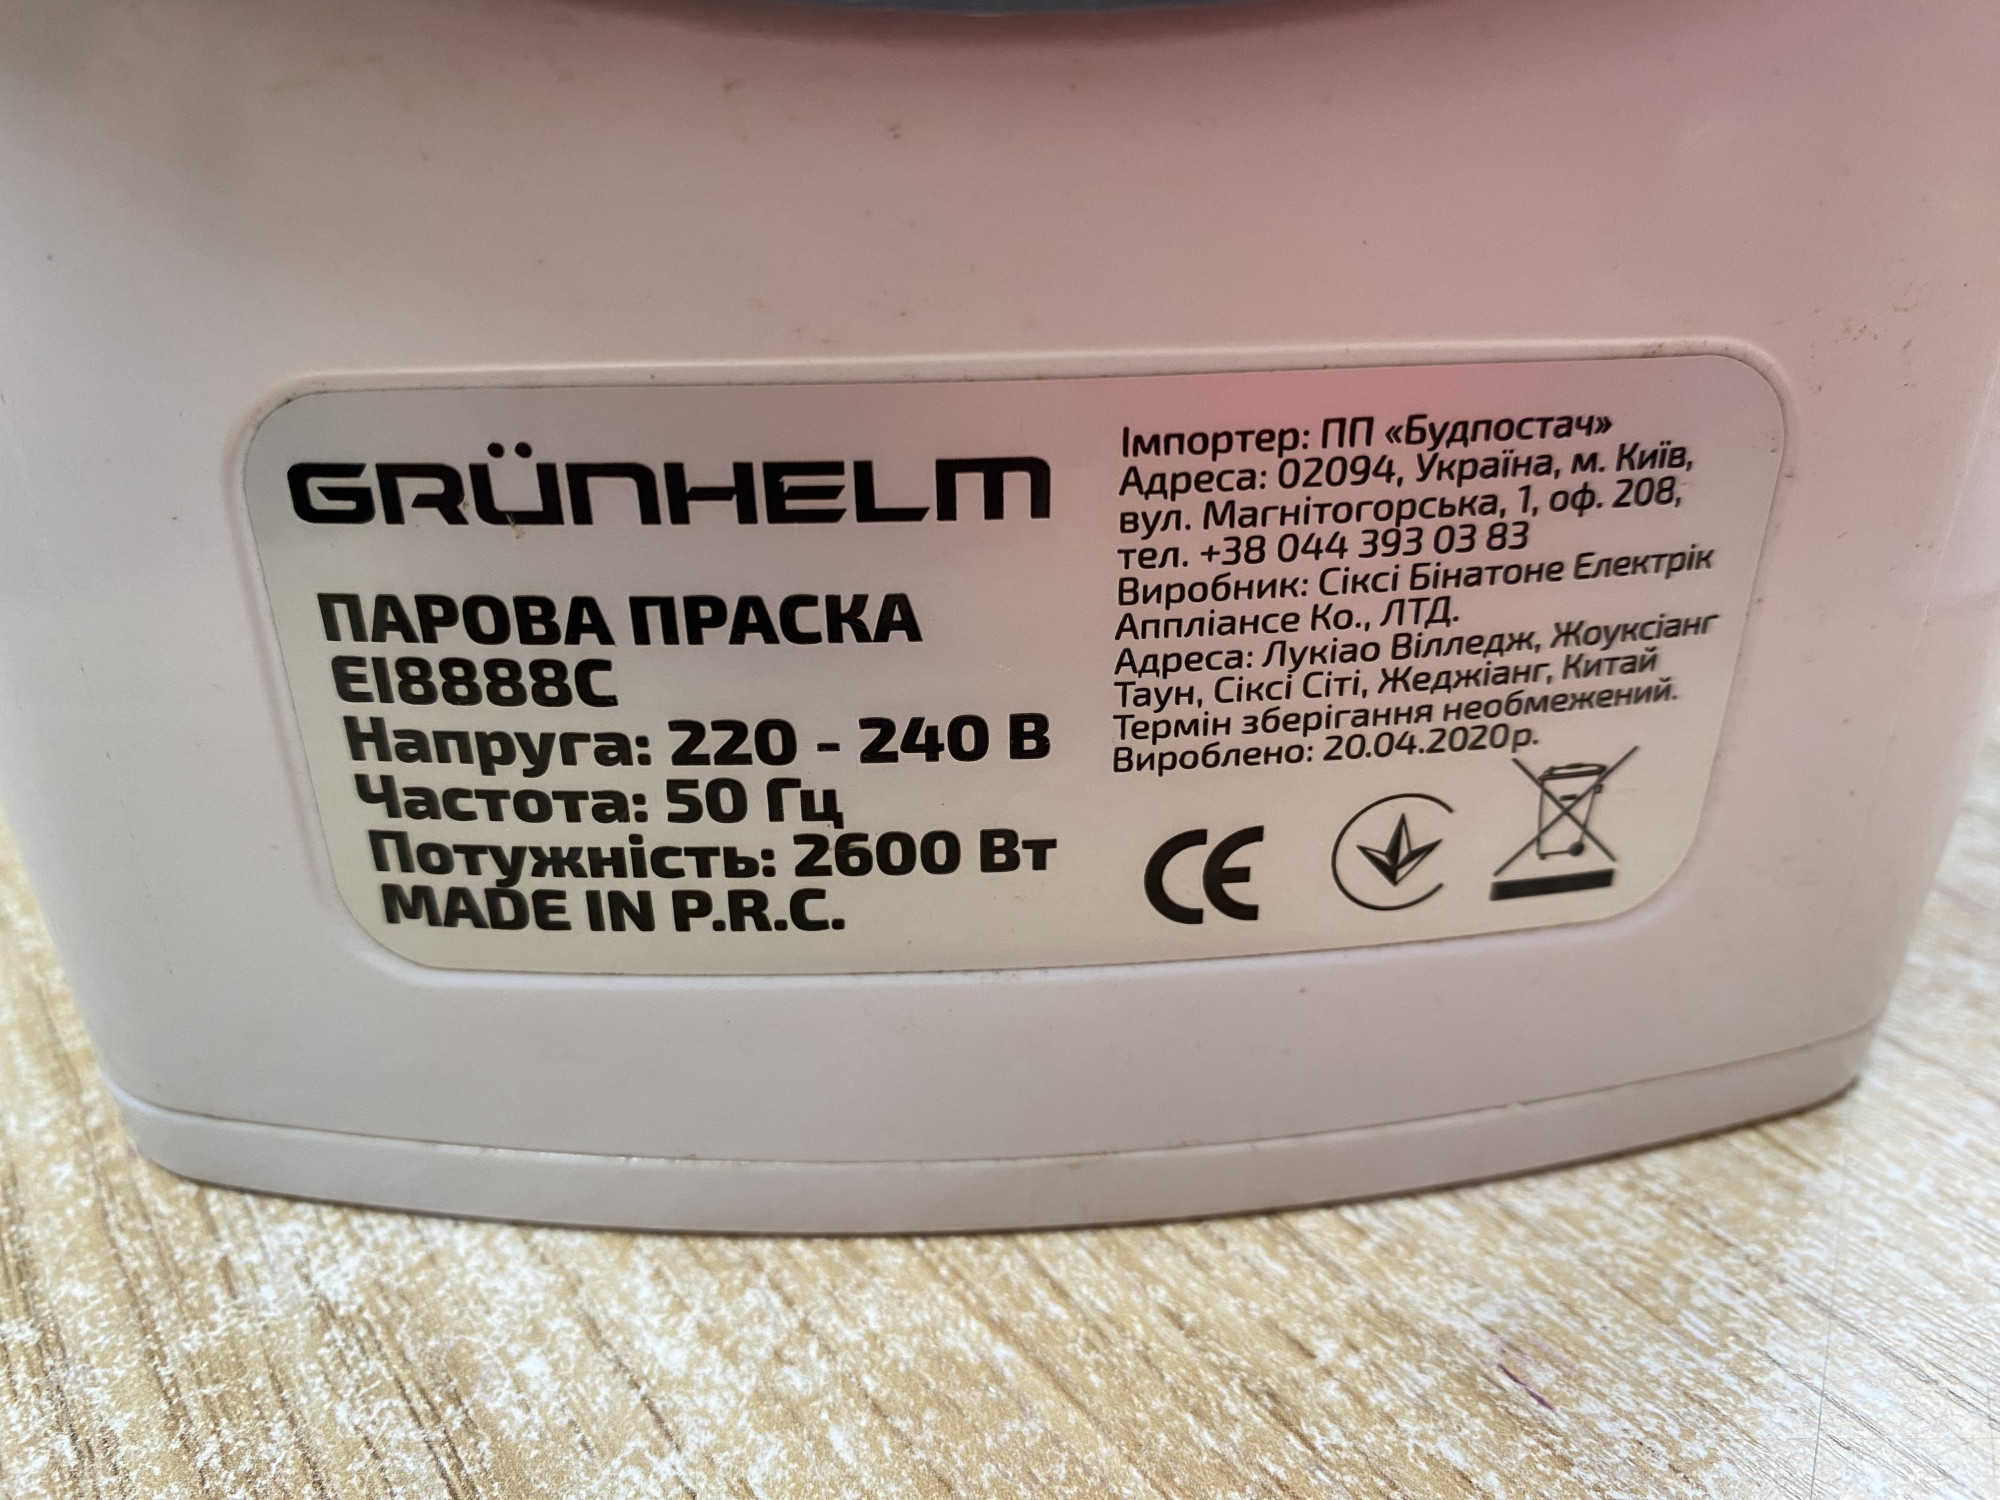 Праска Grunhelm EI8888C 5